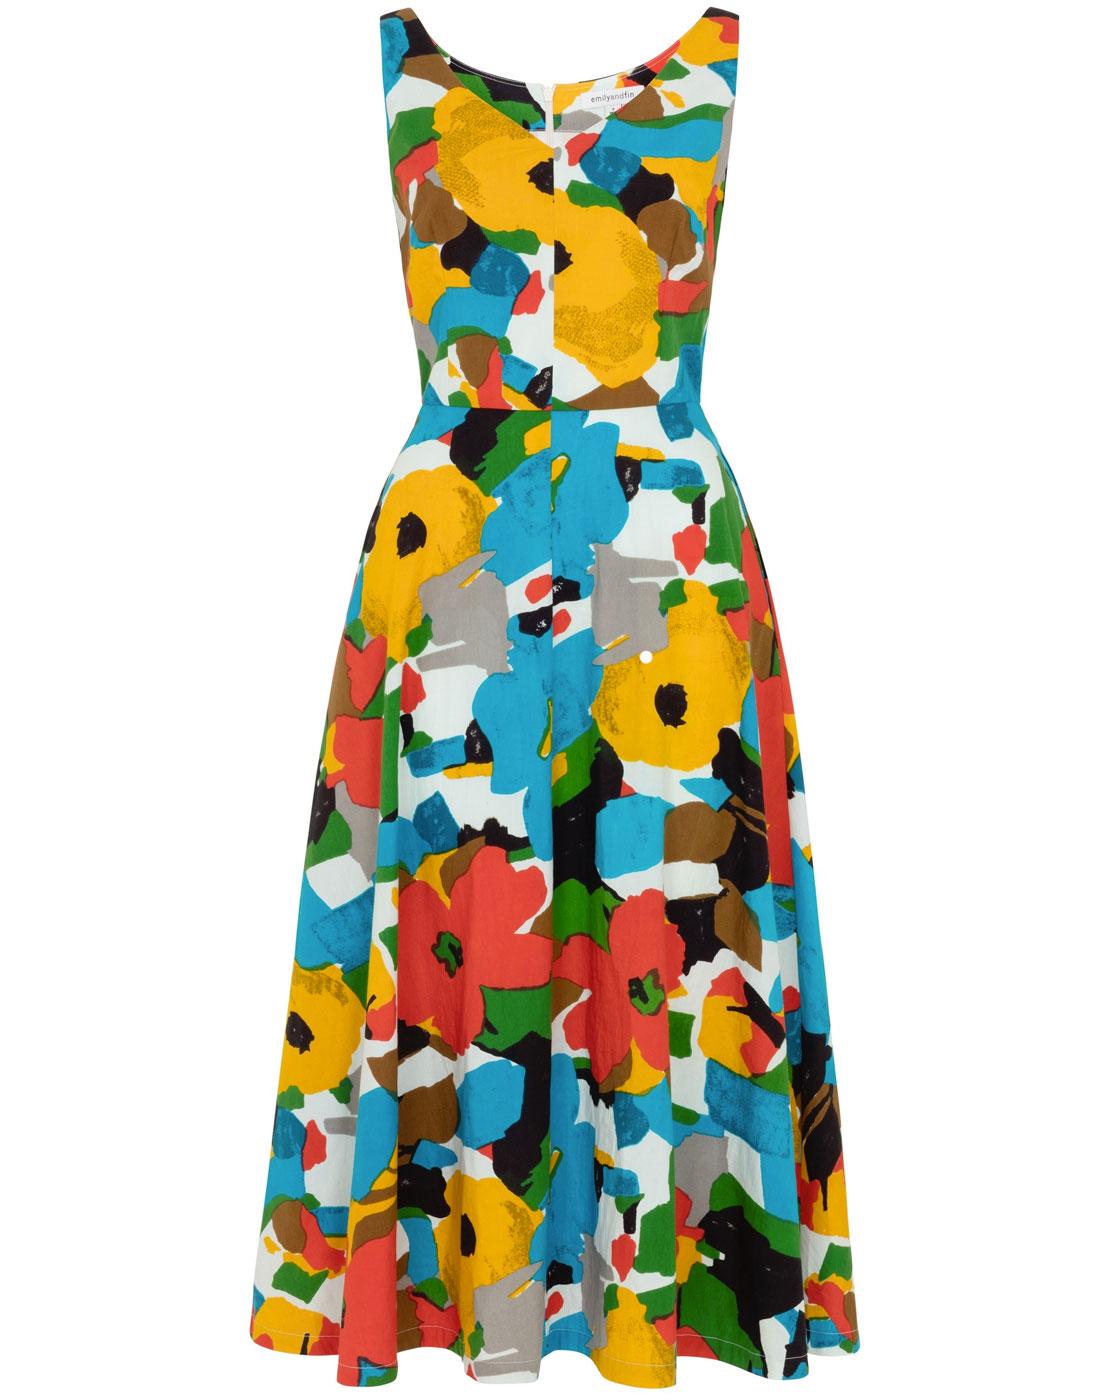 Desconexión acumular Una vez más EMILY AND FIN Margot Vintage 50s Painted Floral Midi Dress